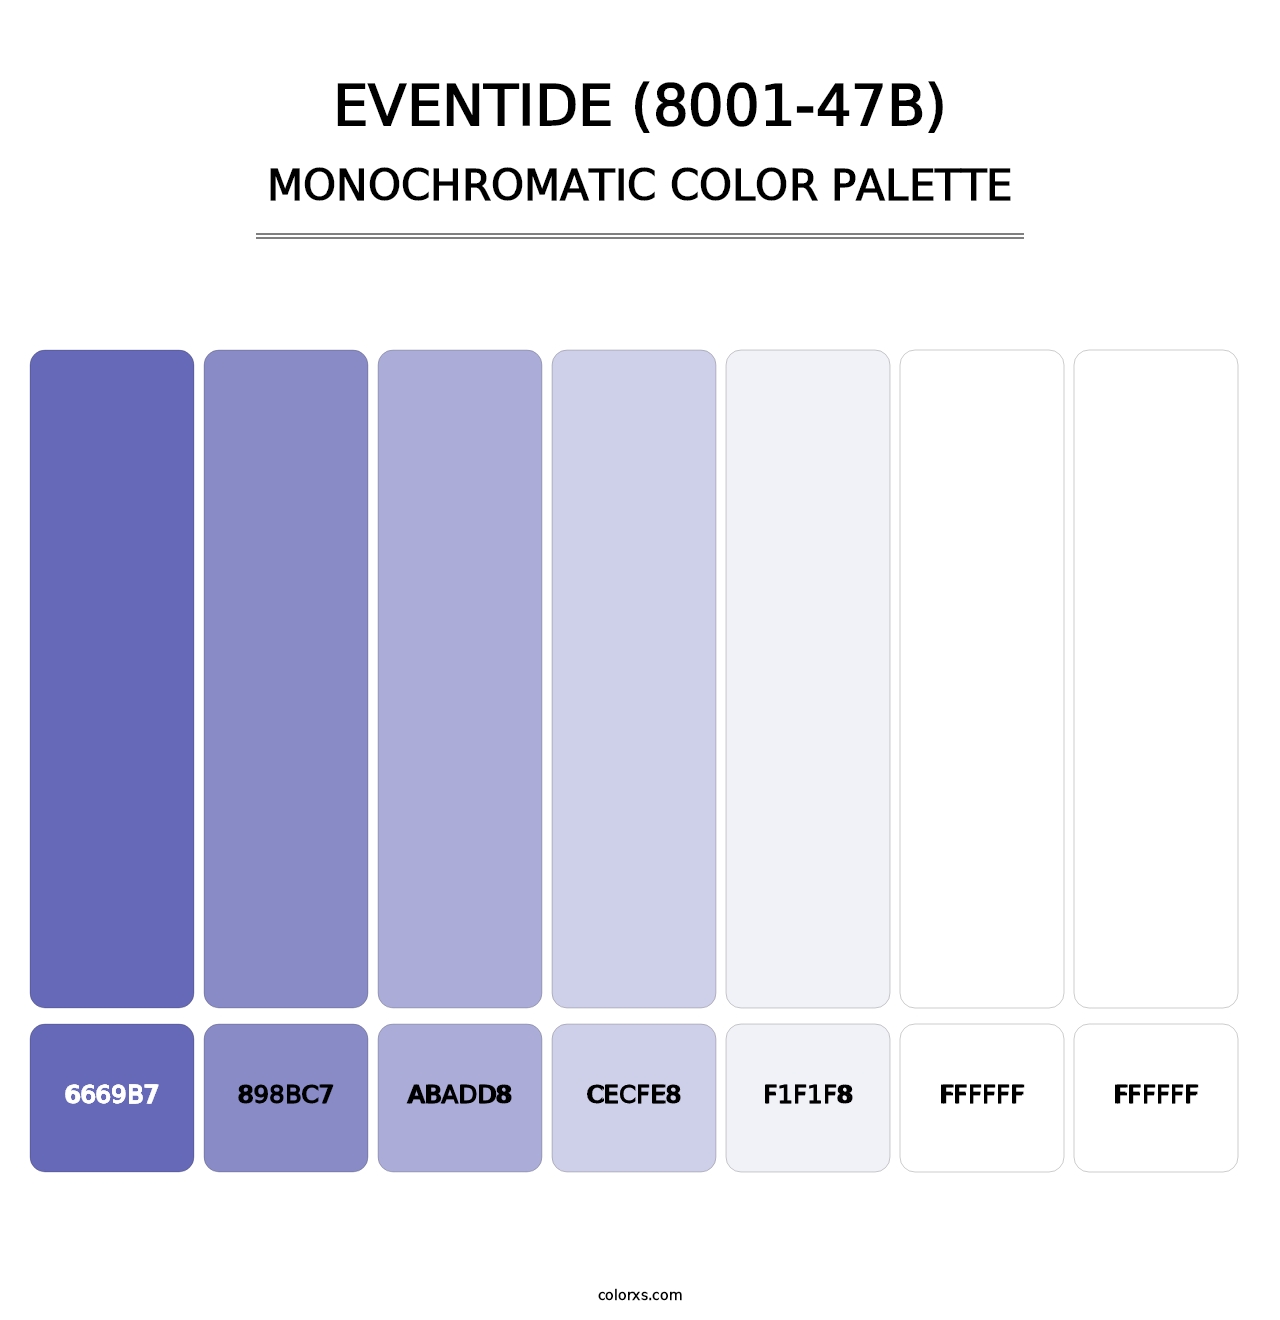 Eventide (8001-47B) - Monochromatic Color Palette